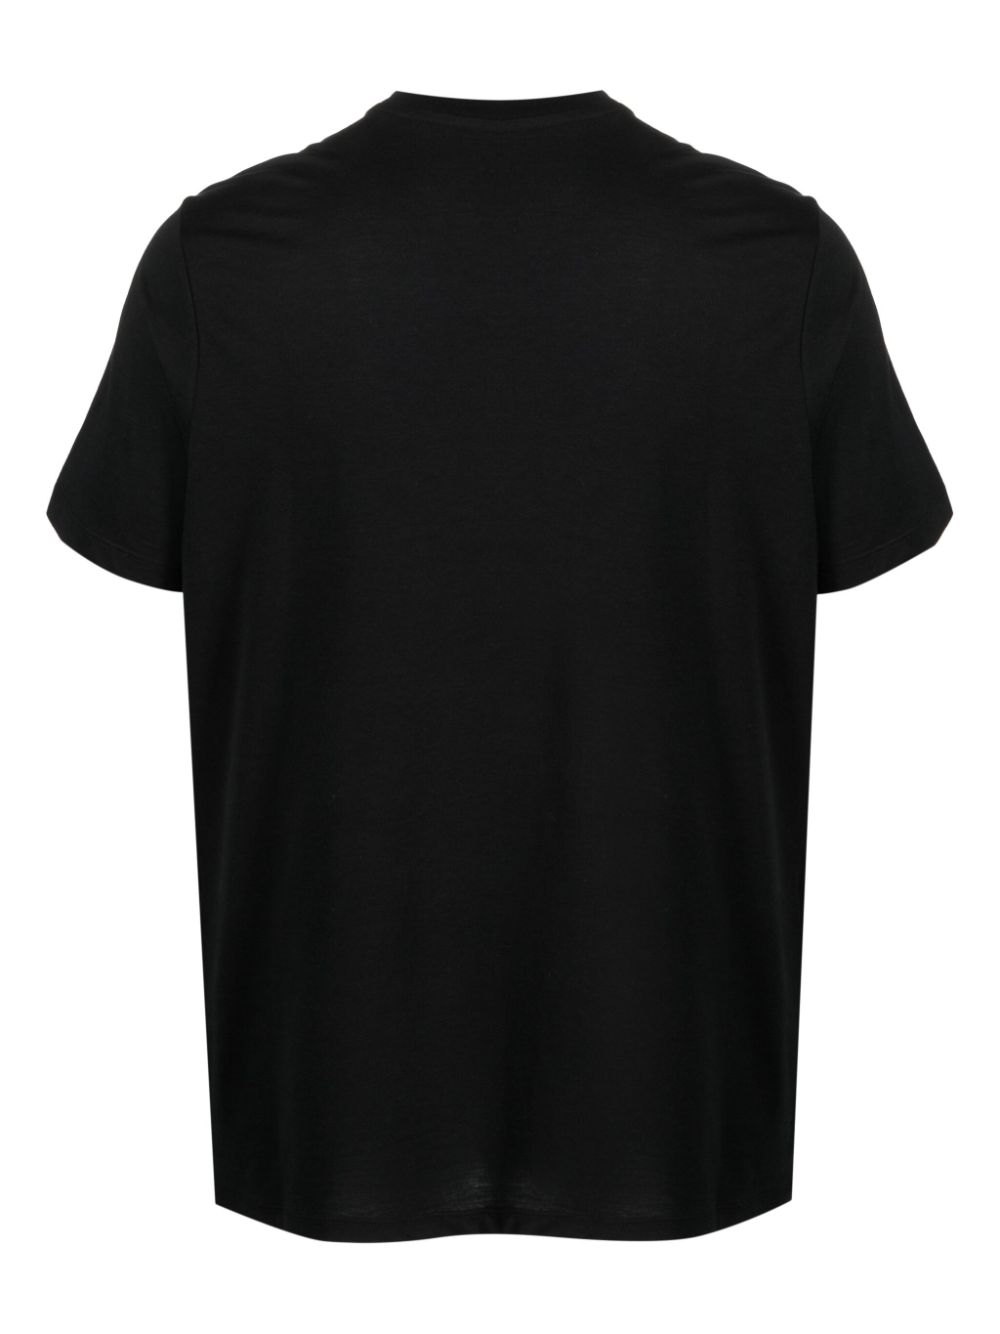 Majestic Filatures T-shirt met ronde hals - Zwart